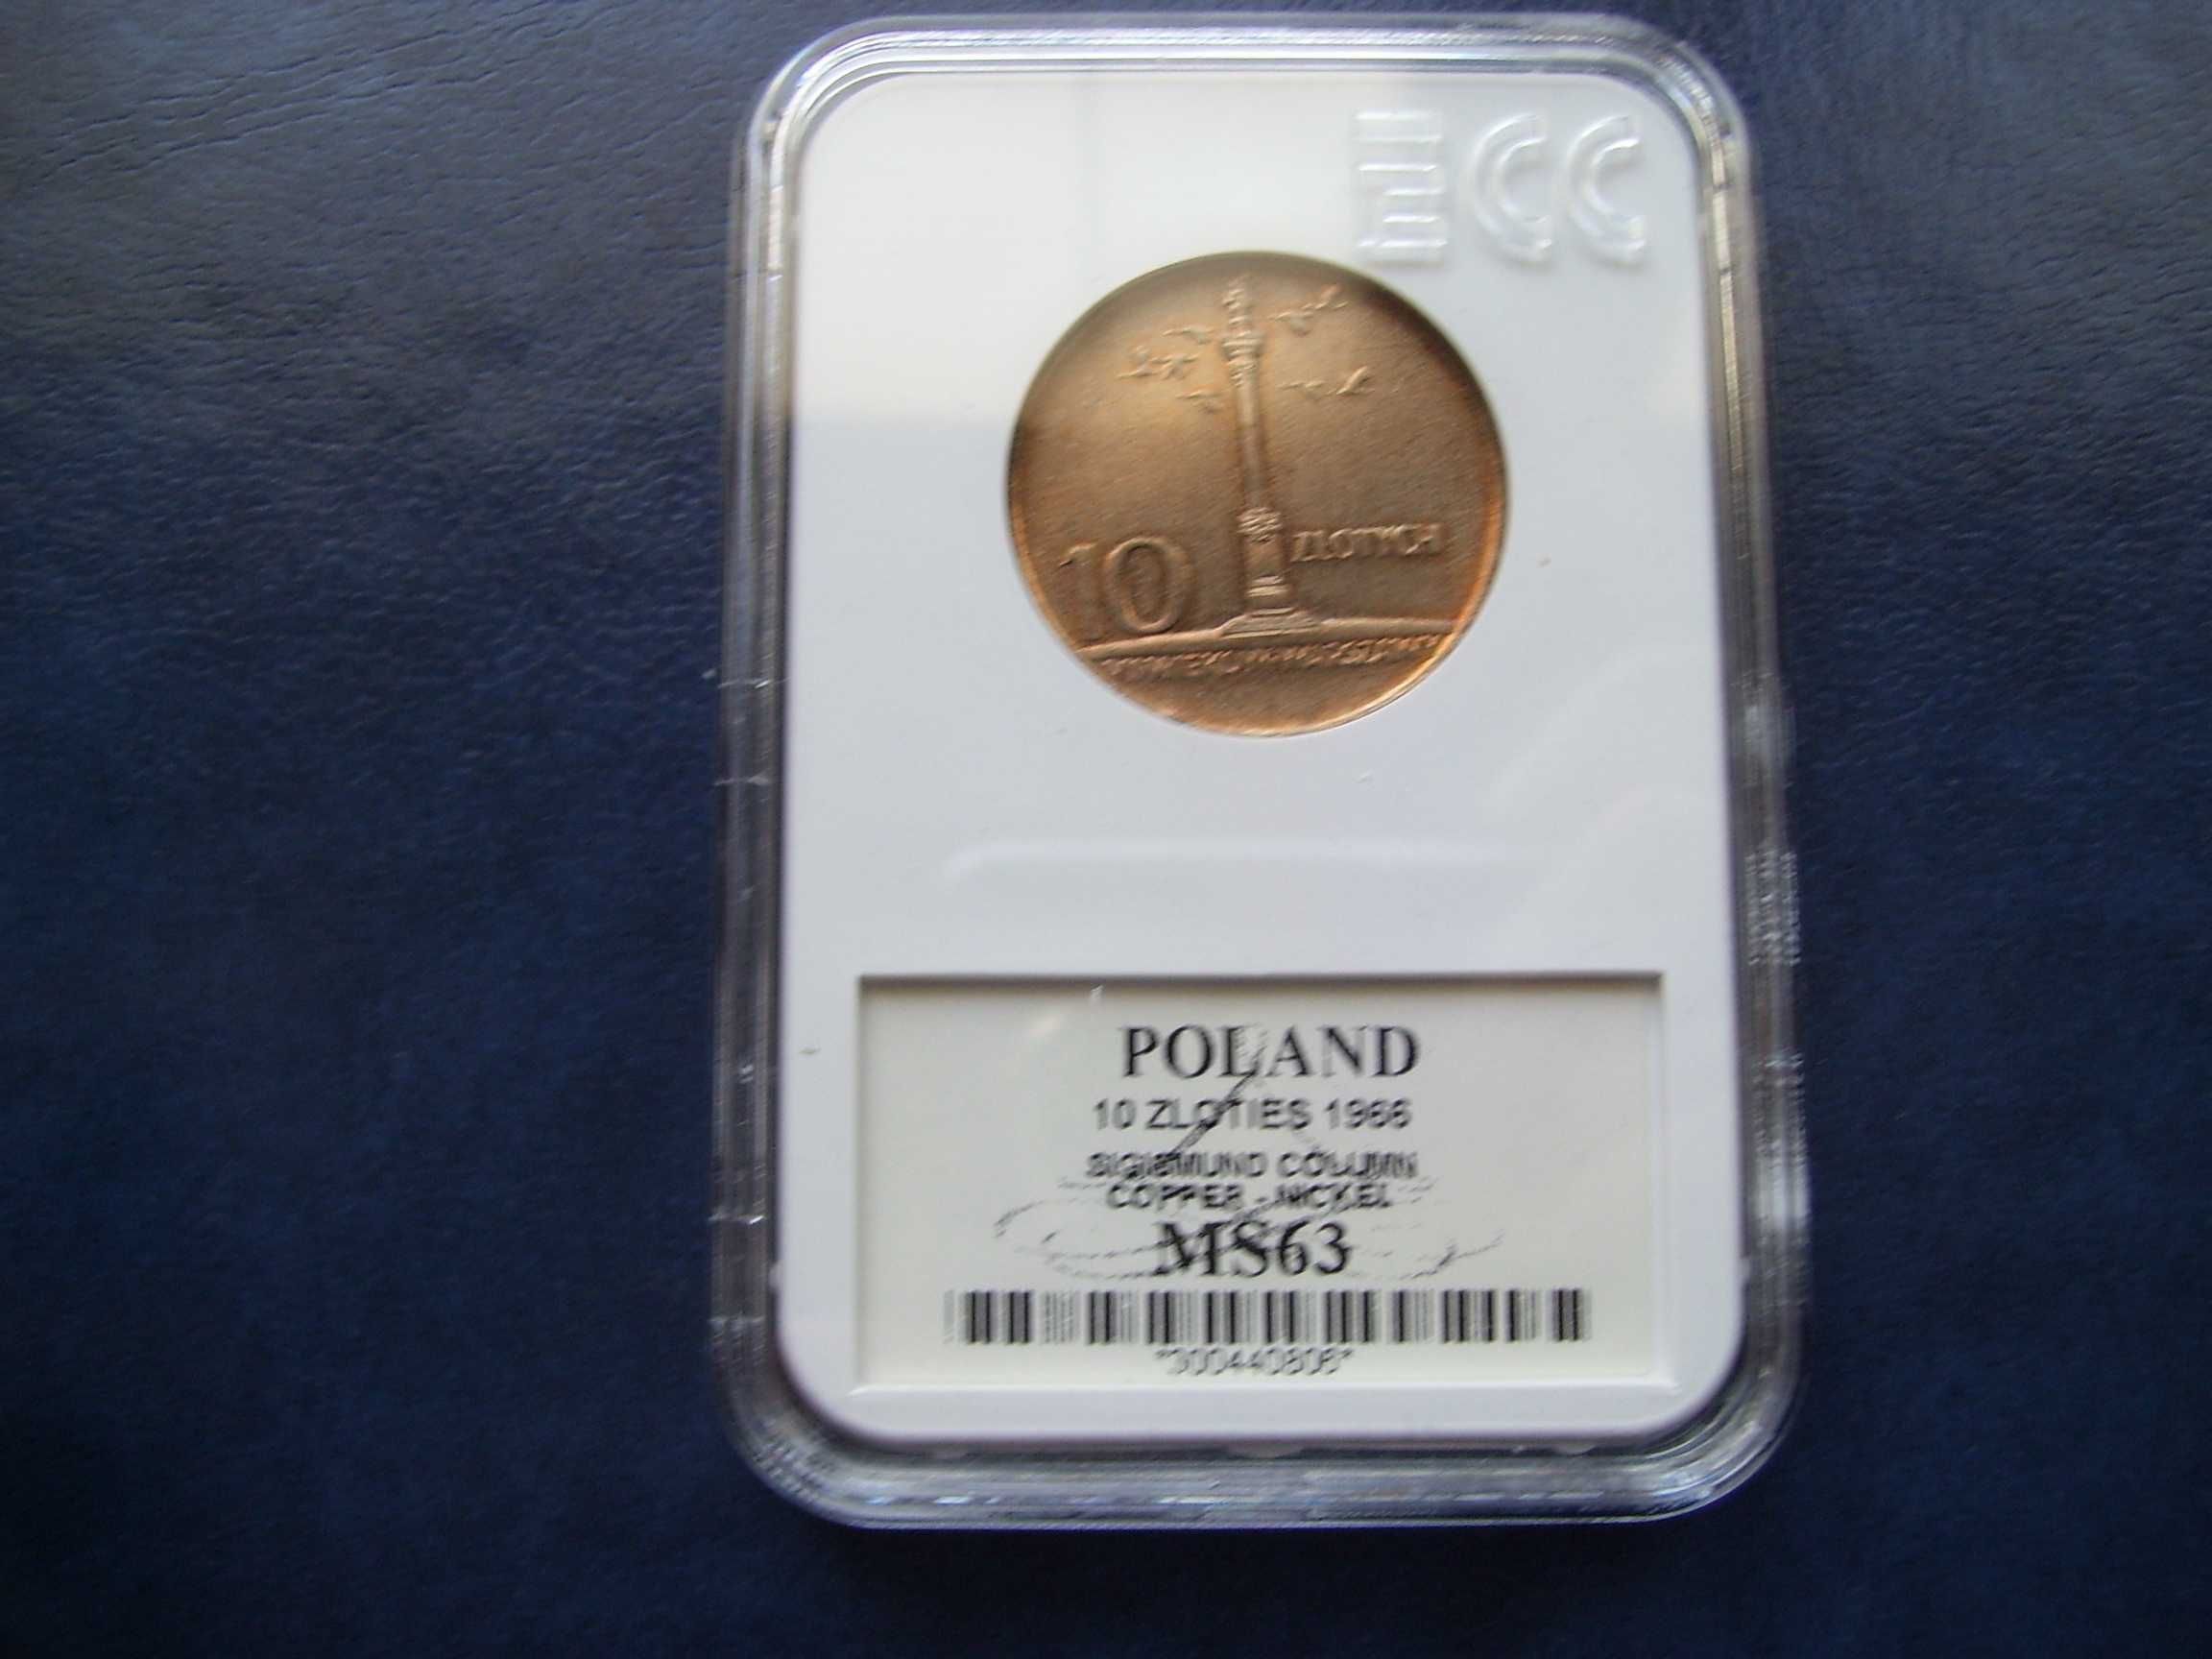 Stare monety 10 złotych 1966 Mała Kolumna MS63 skrętka PRL